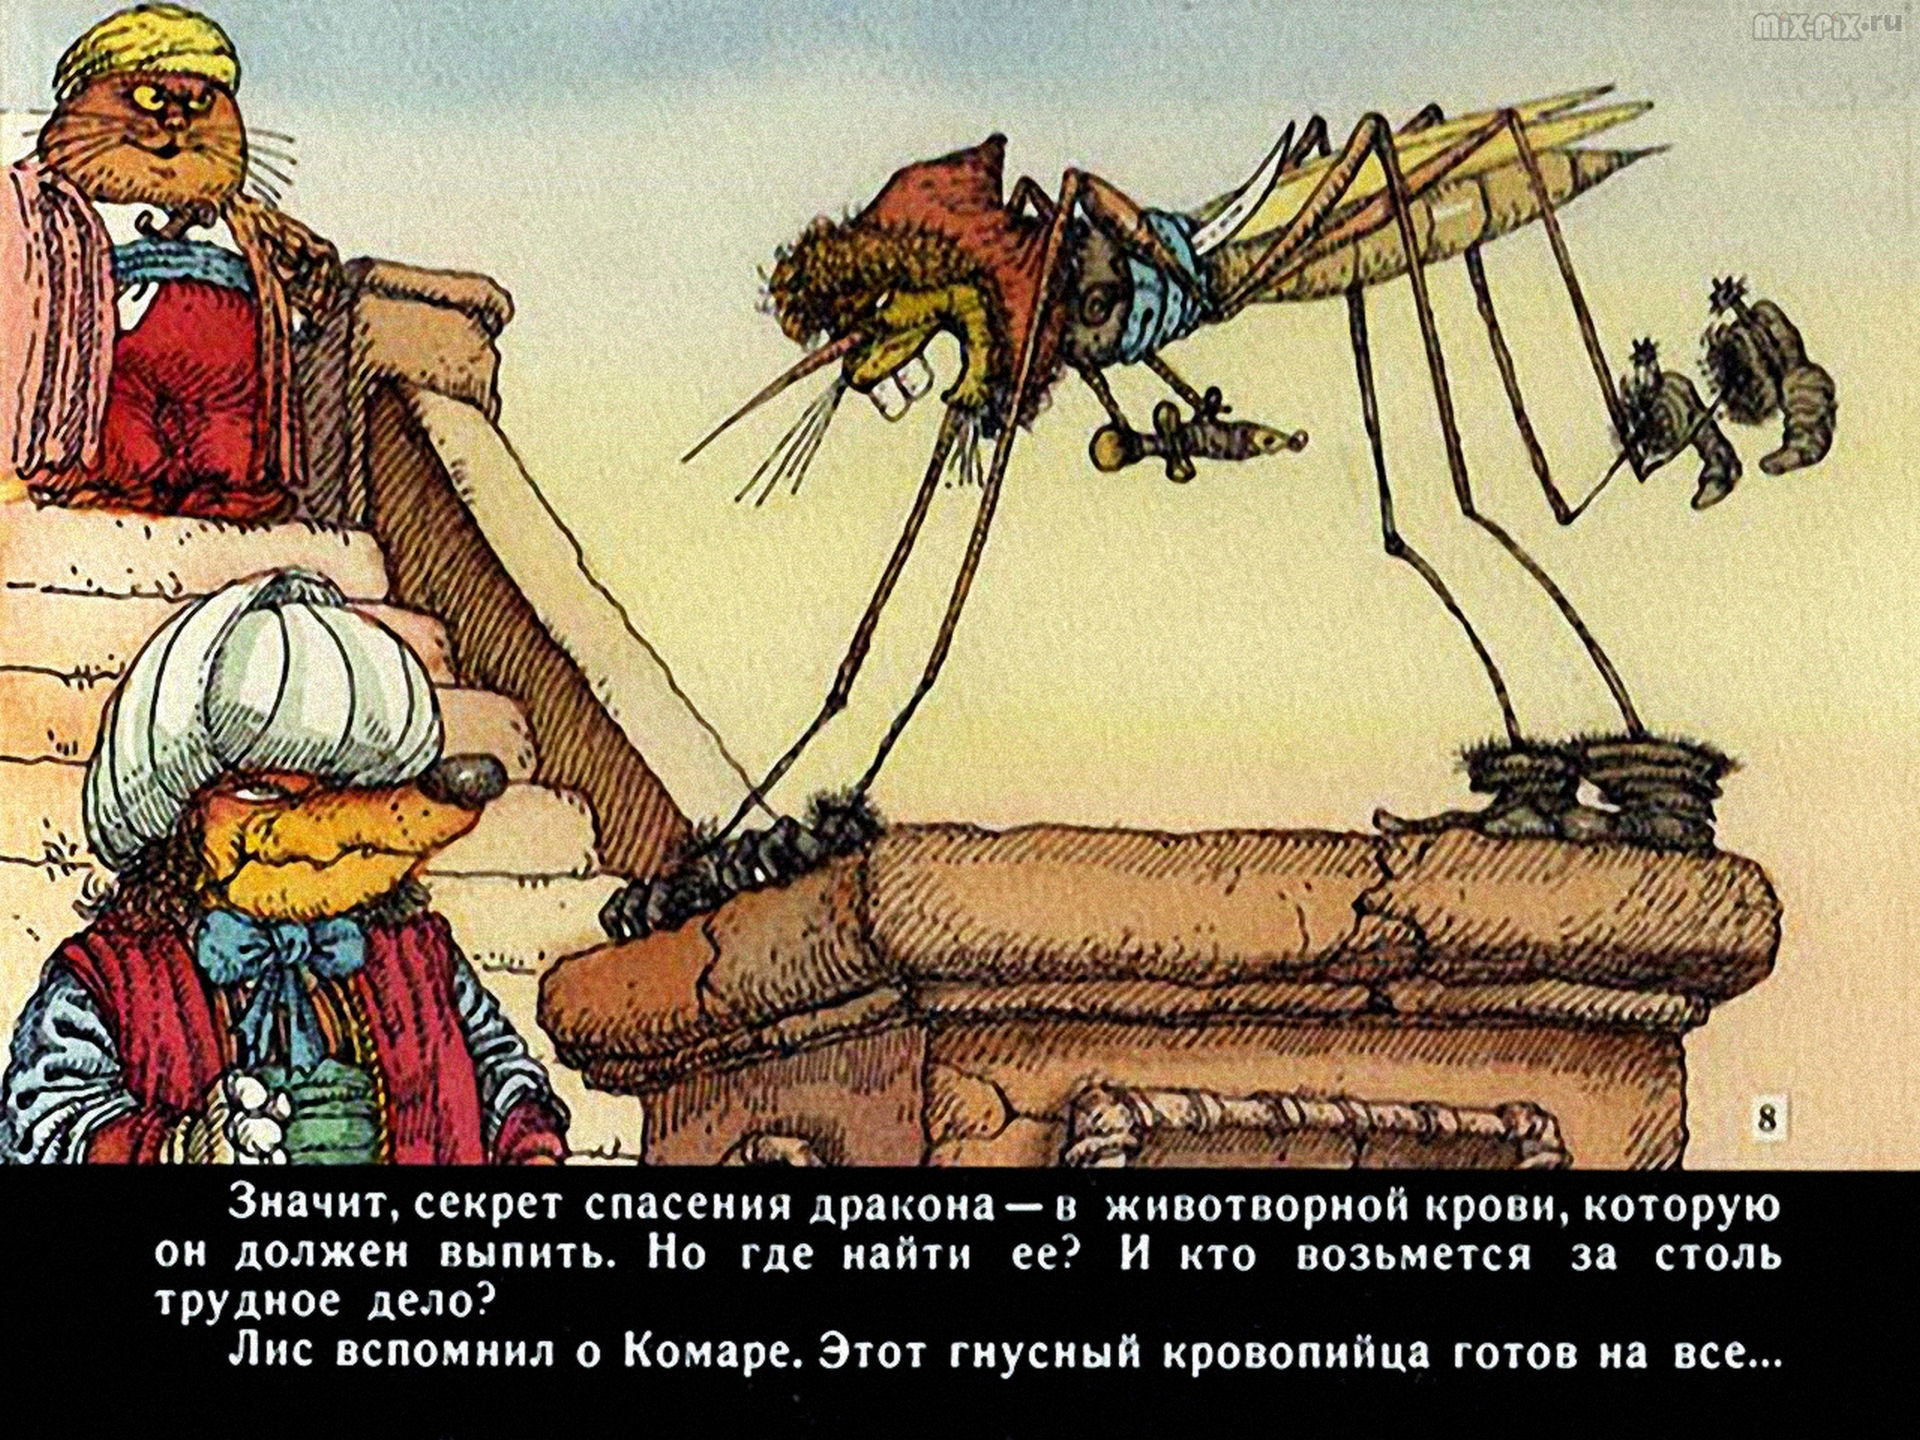 Почему у ласточки хвост. Сказка почему у ласточки хвост рожками казахская народная. Почему у ласточки хвост рожками. Герои сказки почему у ласточки хвост рожками. Почему у ласточки хвост рожками сказка.